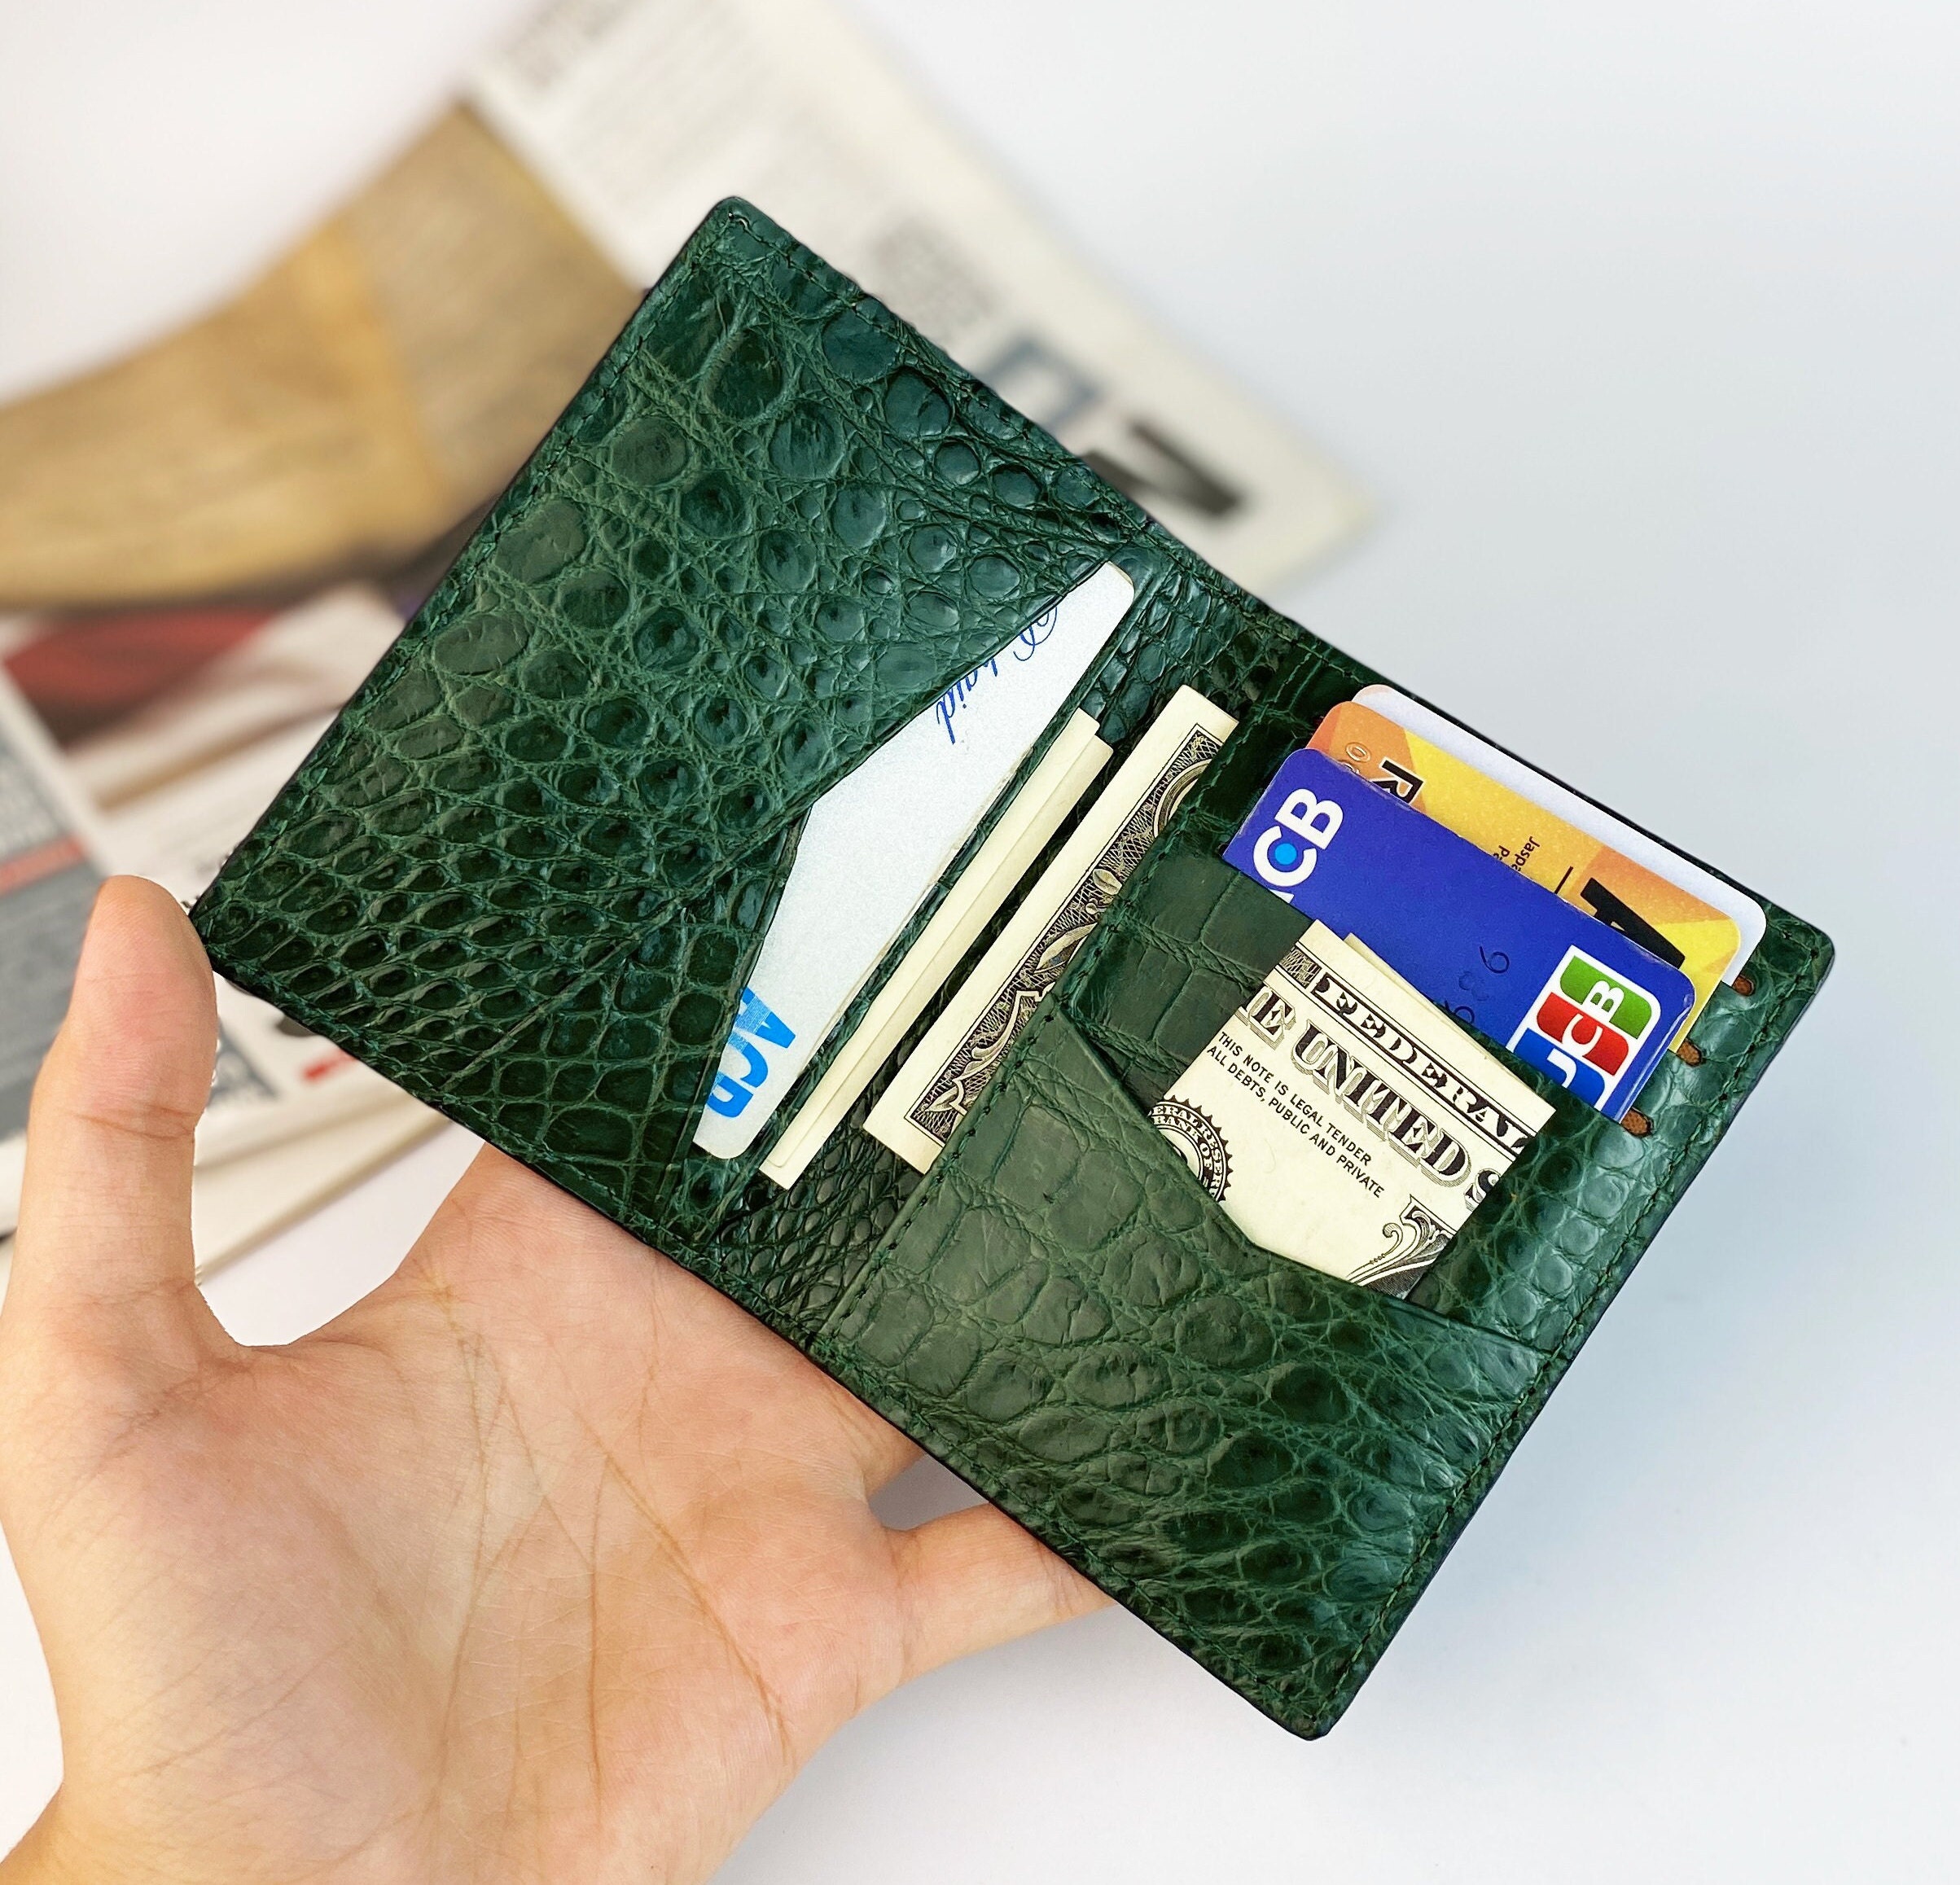 Men's Alligator Belly Long Wallet and Long Credit Card Holder